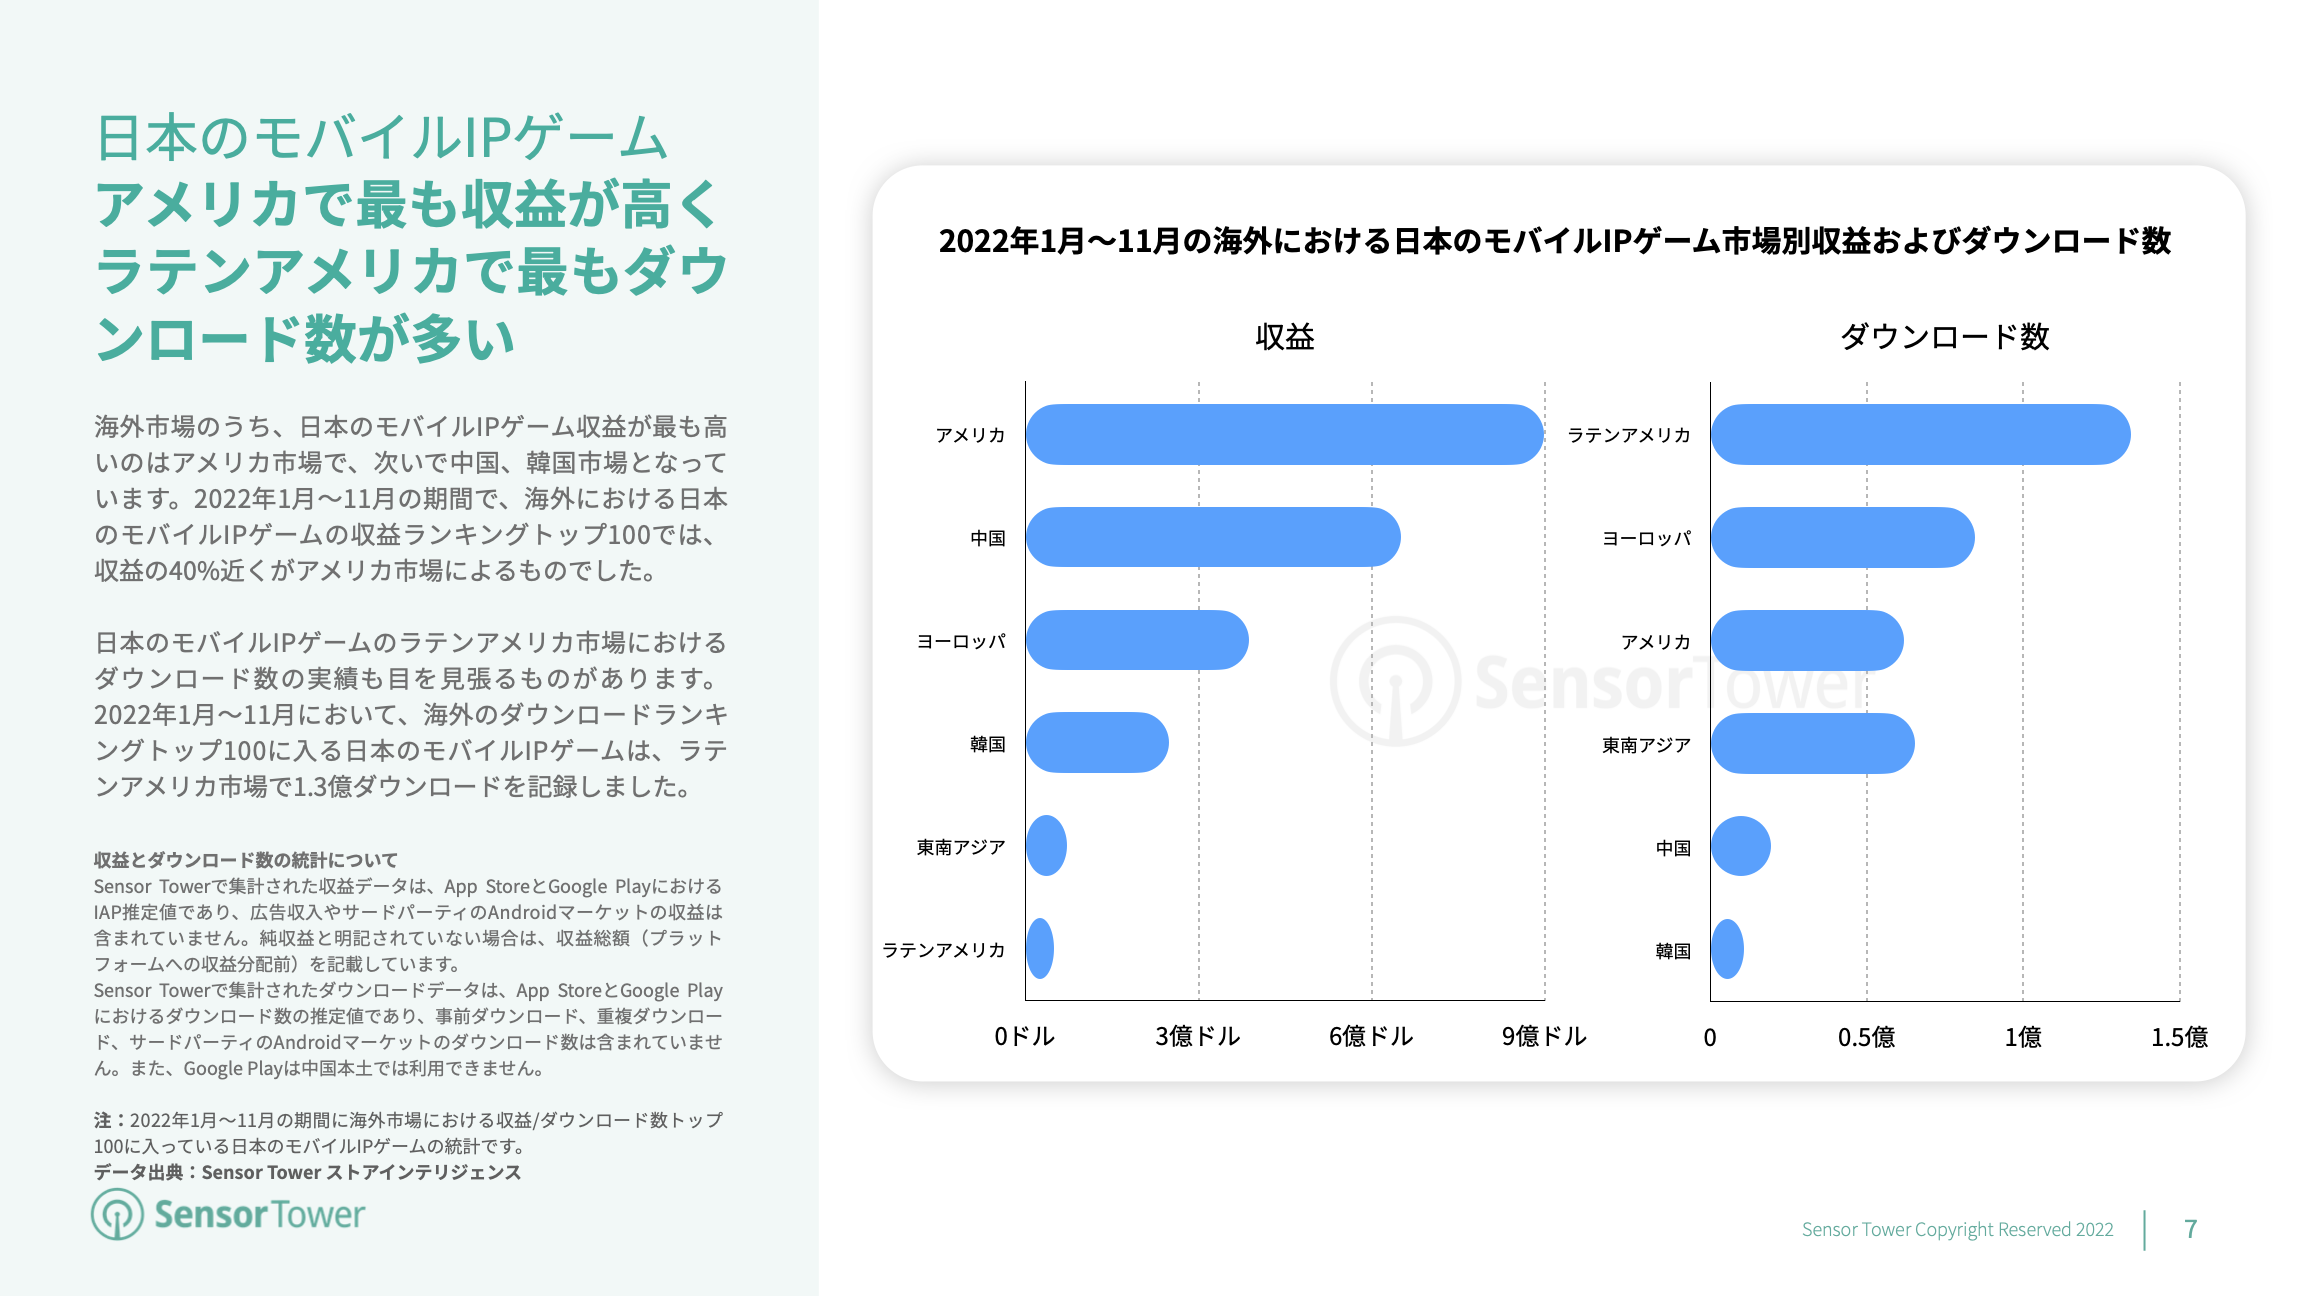 -JP- State of Japan IP-based Games Overseas 2022 Report(pg7)